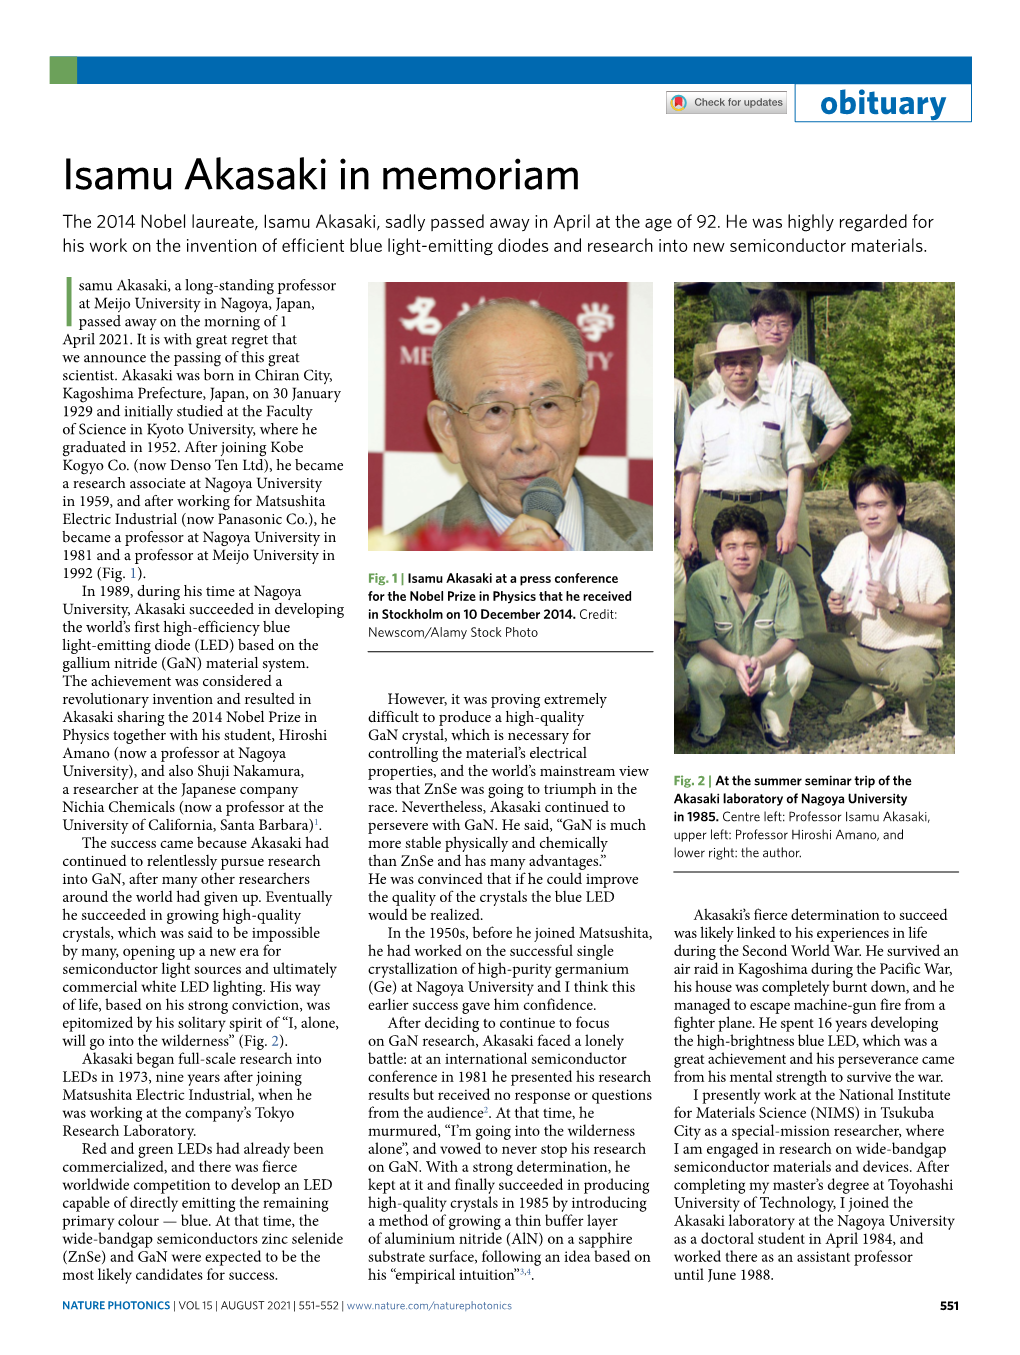 Isamu Akasaki in Memoriam the 2014 Nobel Laureate, Isamu Akasaki, Sadly Passed Away in April at the Age of 92